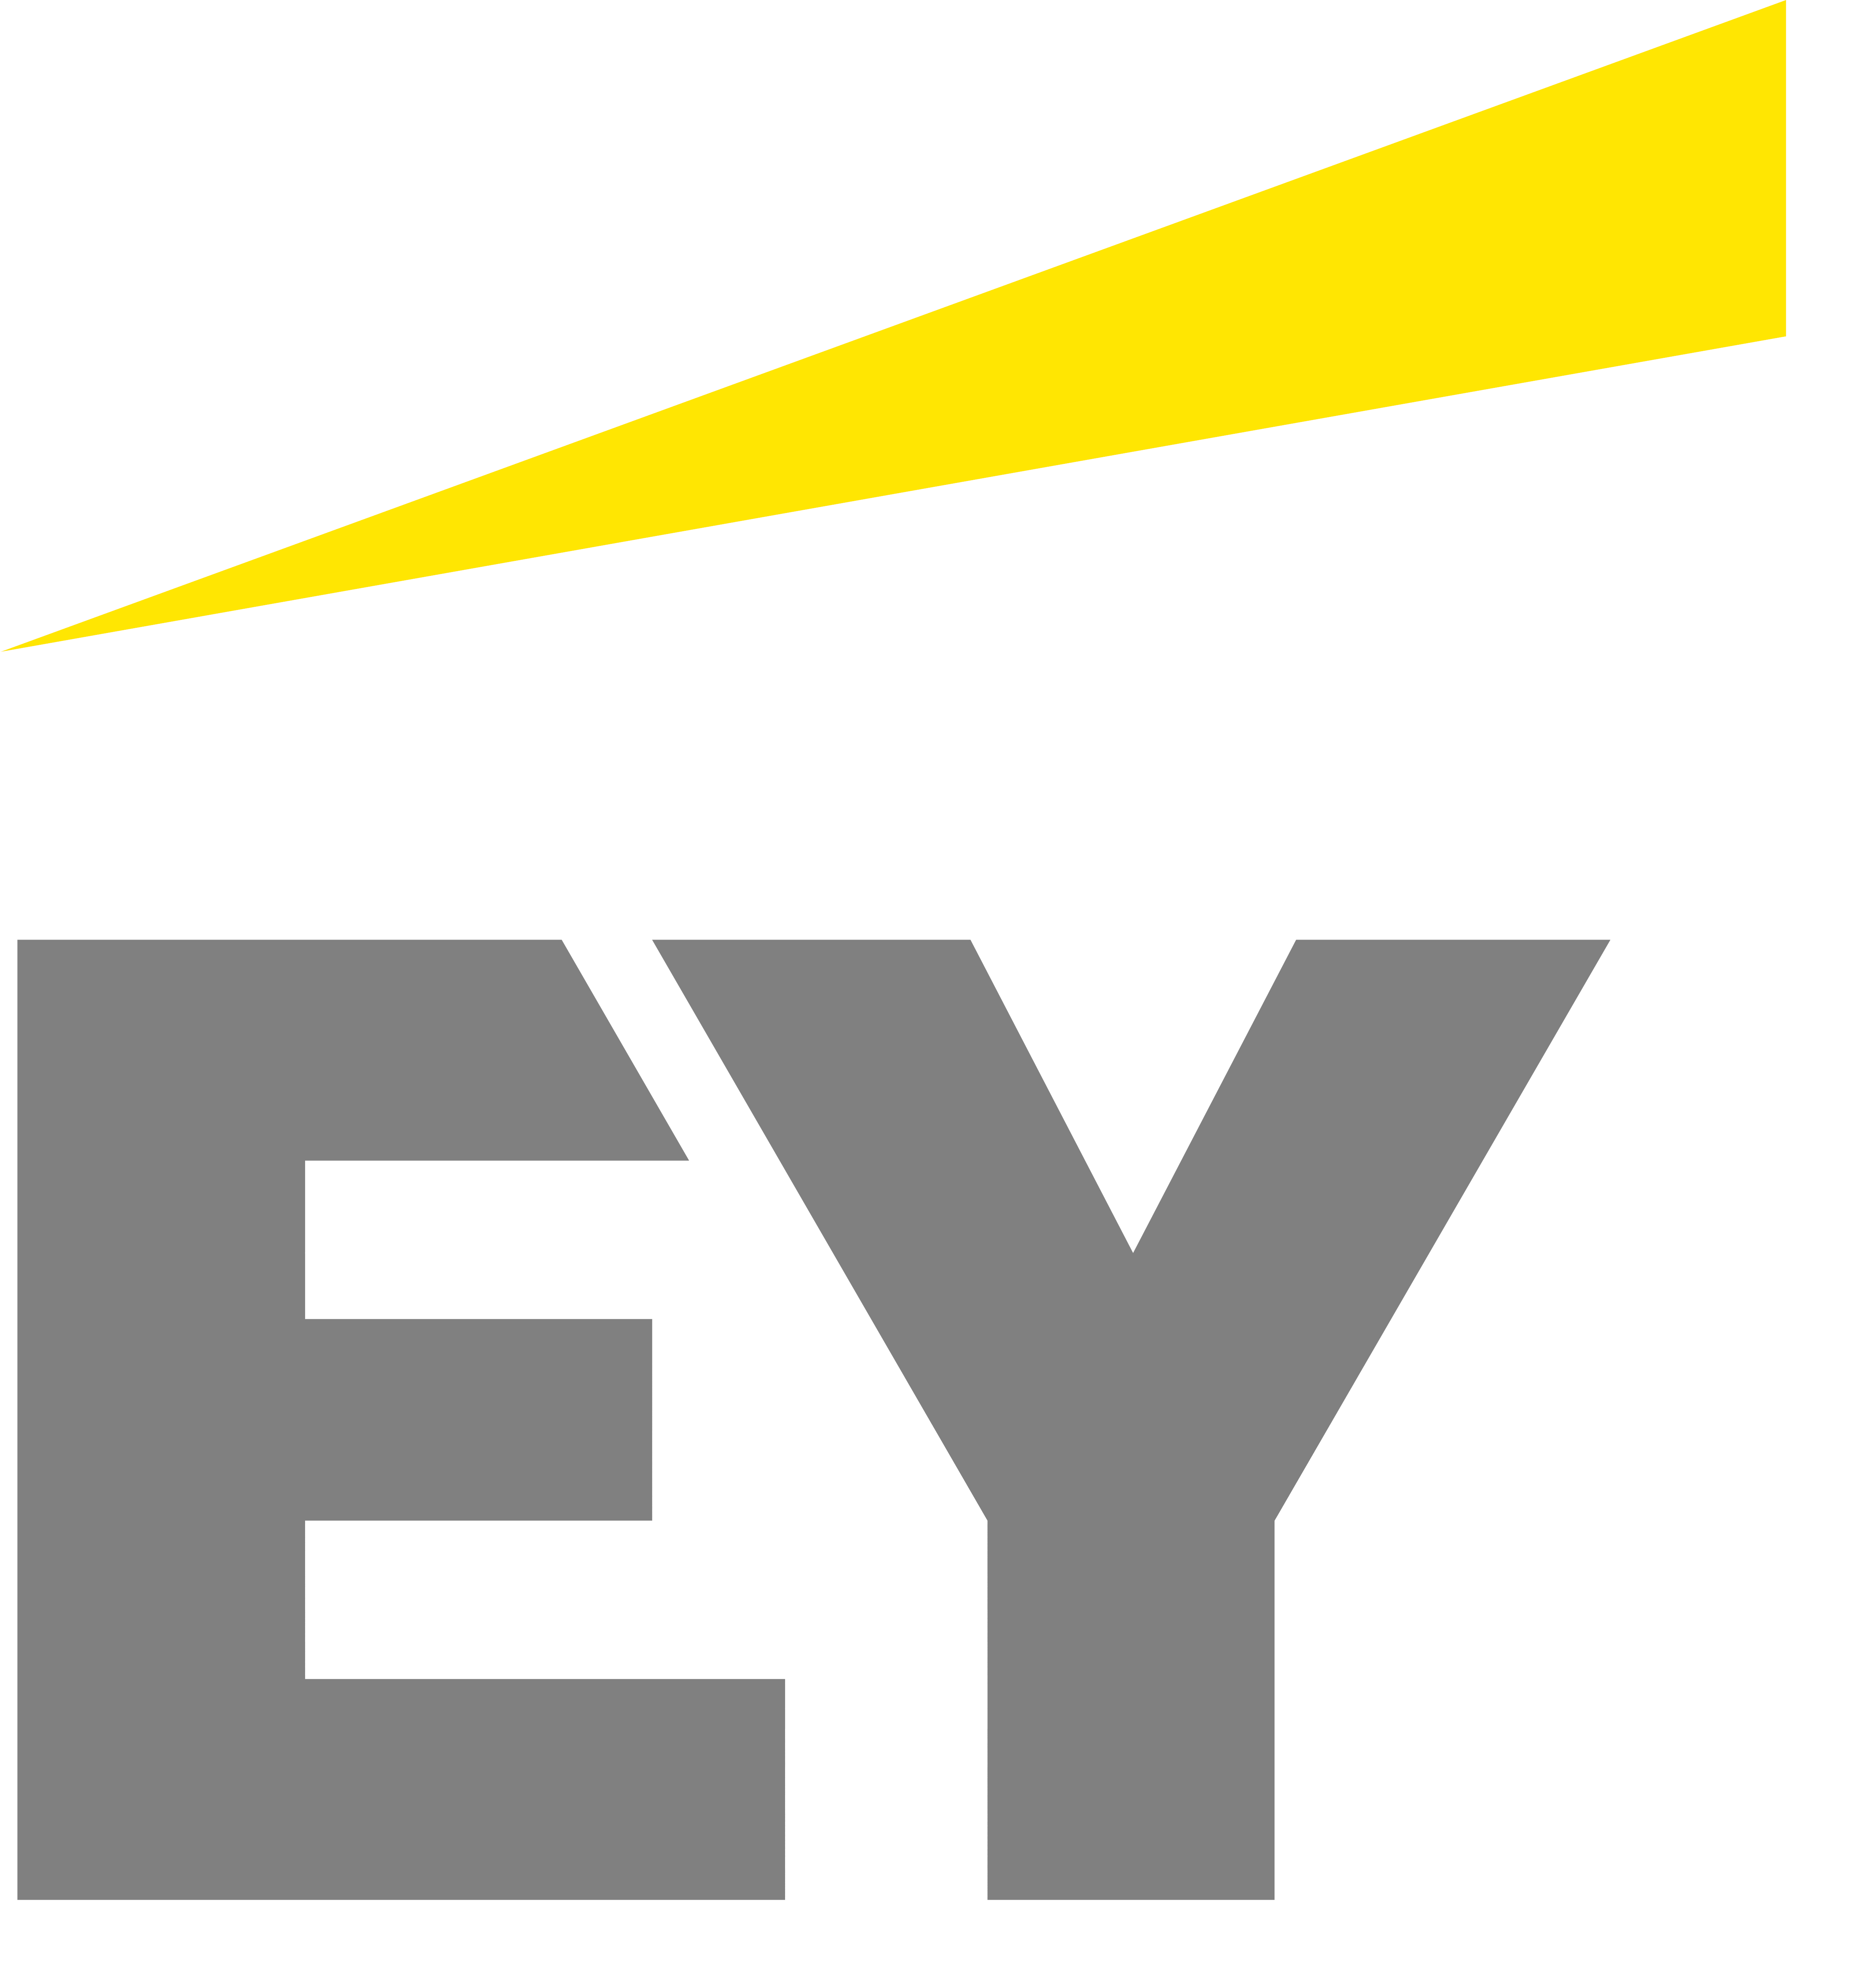 Ey Logos Download